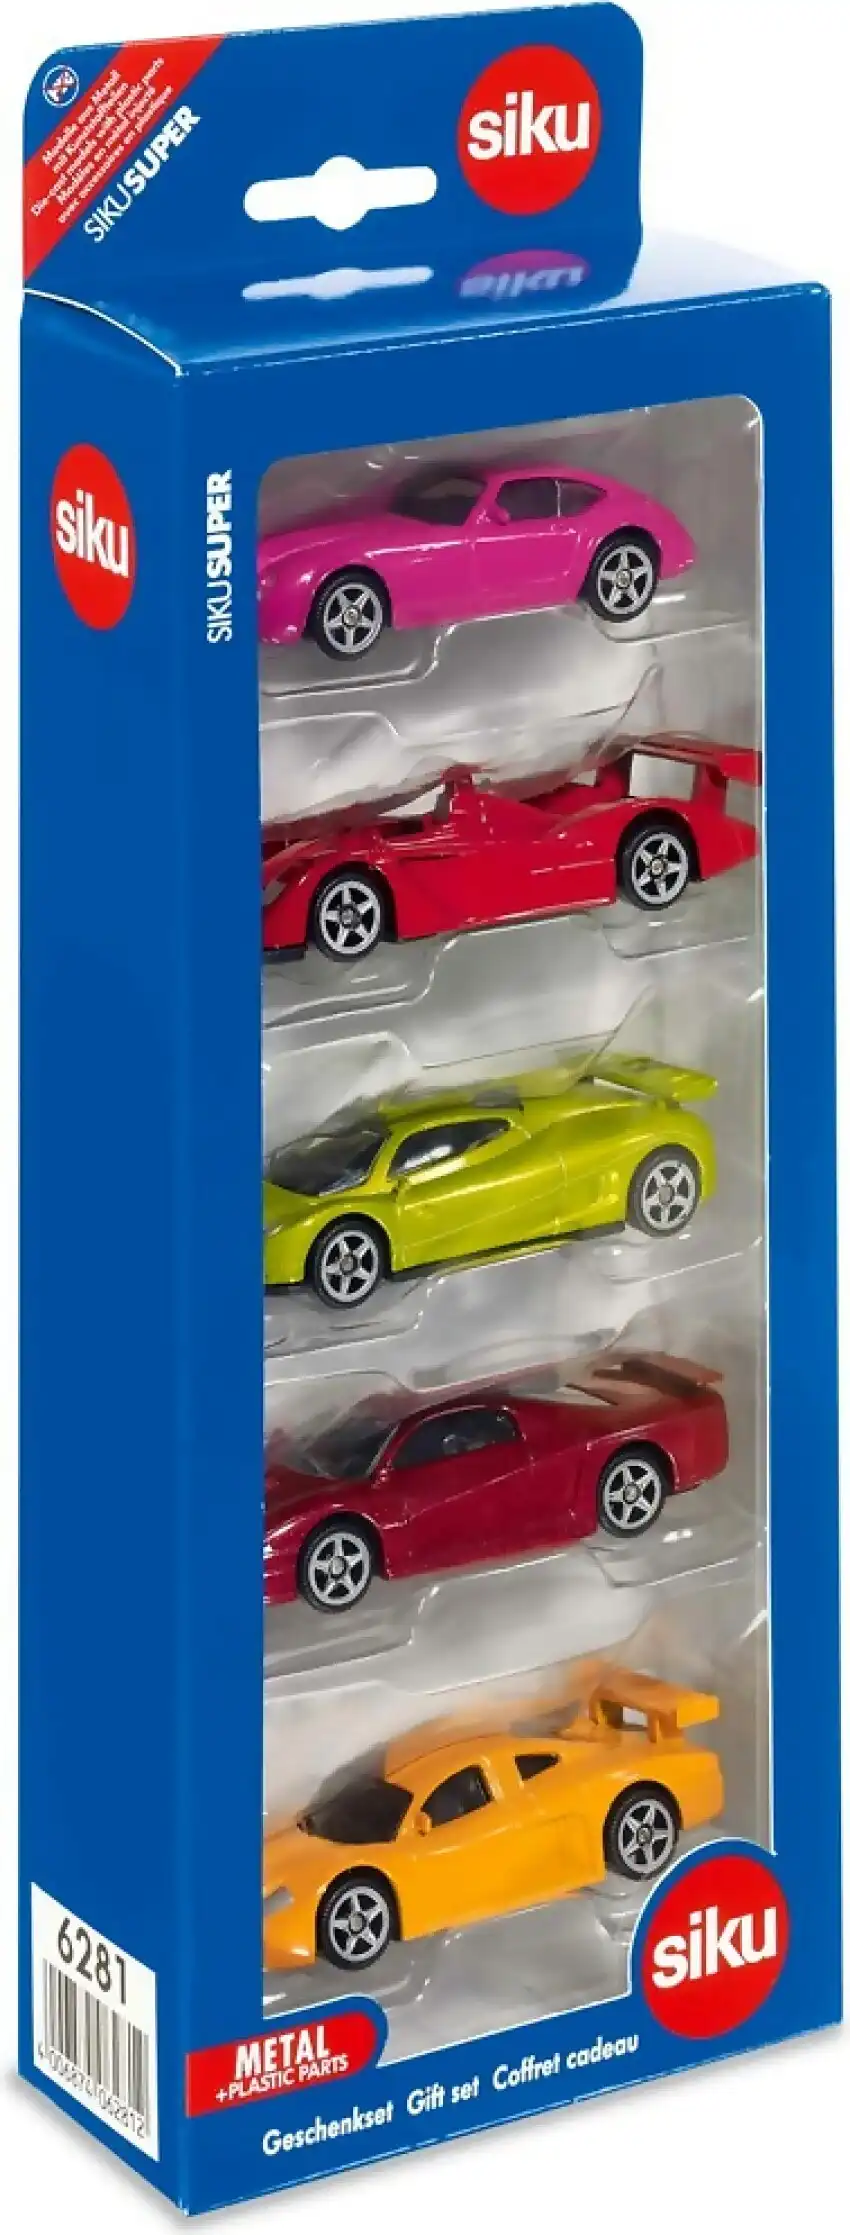 Siku - Gift Set Cars